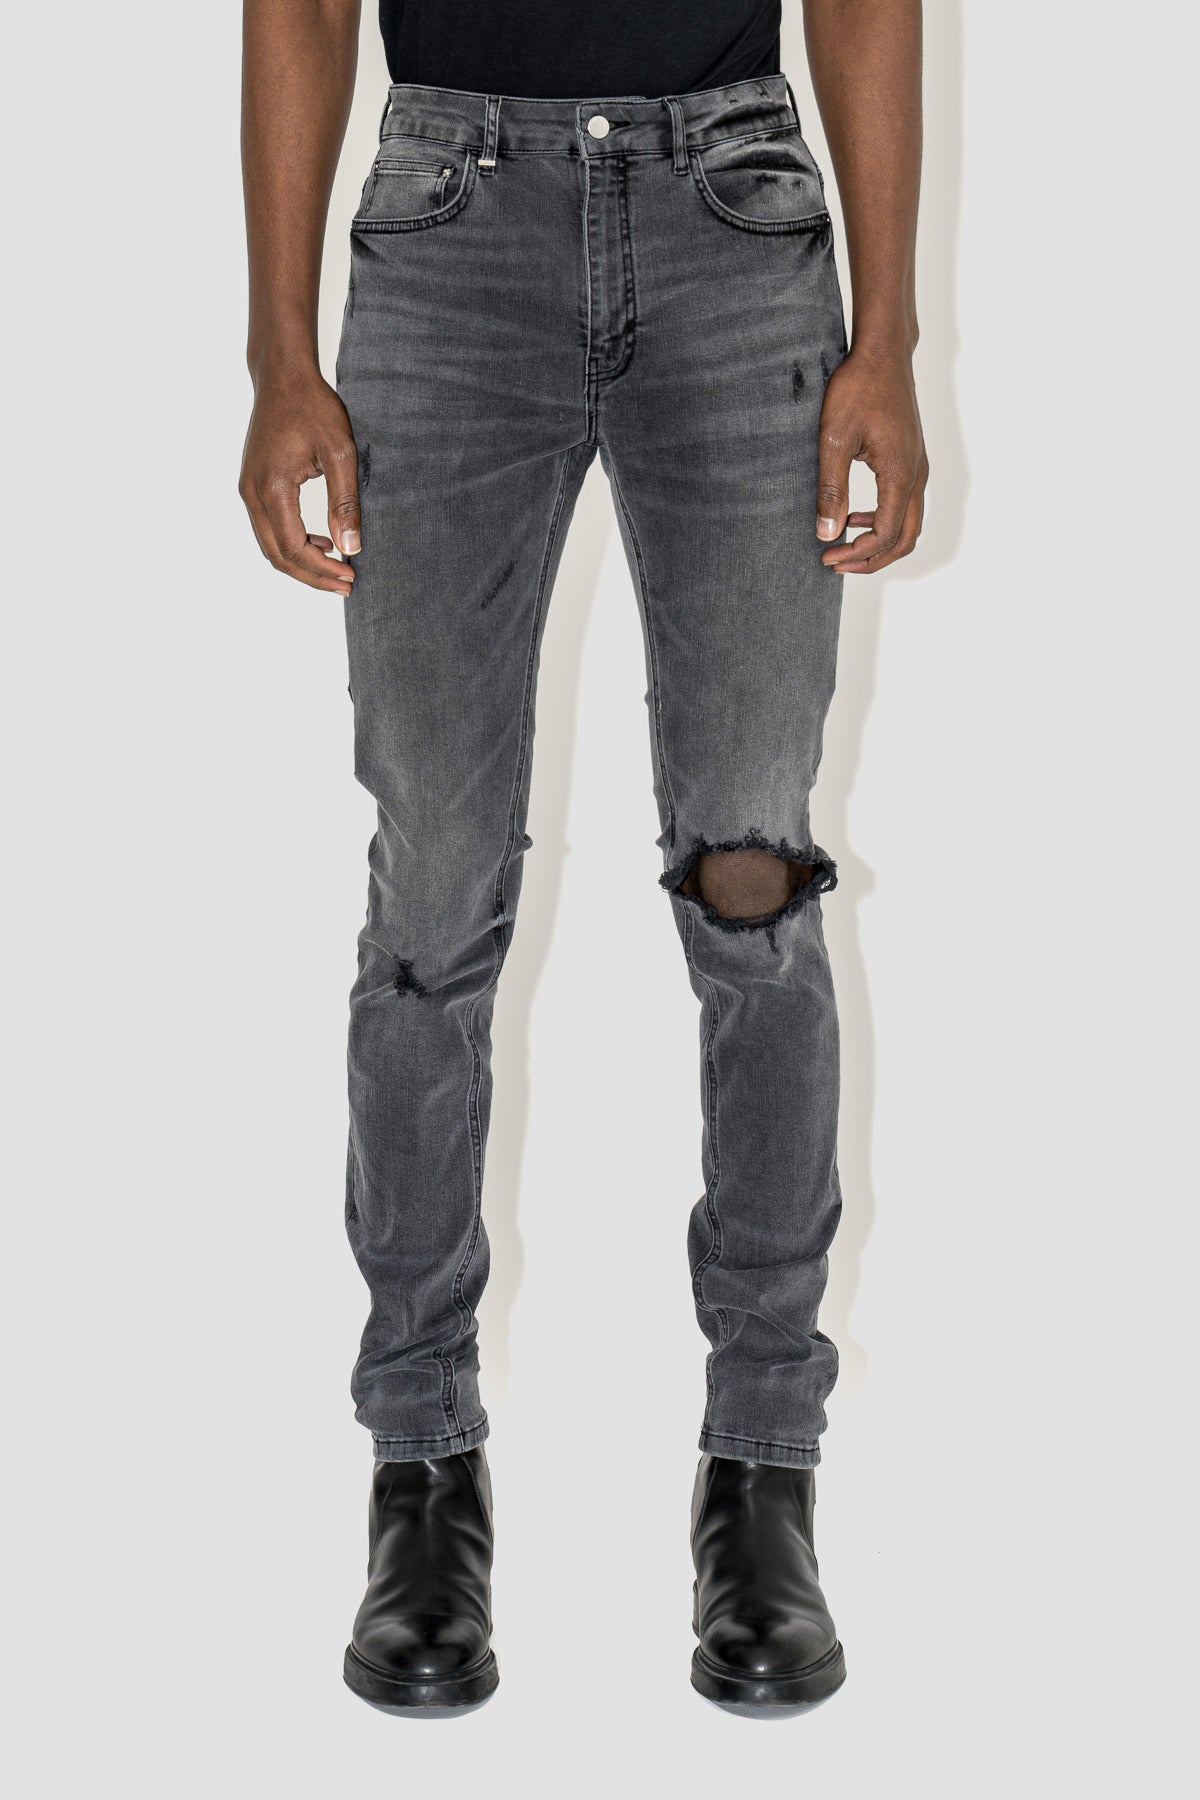 Destroyer Skinny Jeans in Grey Washed Denim